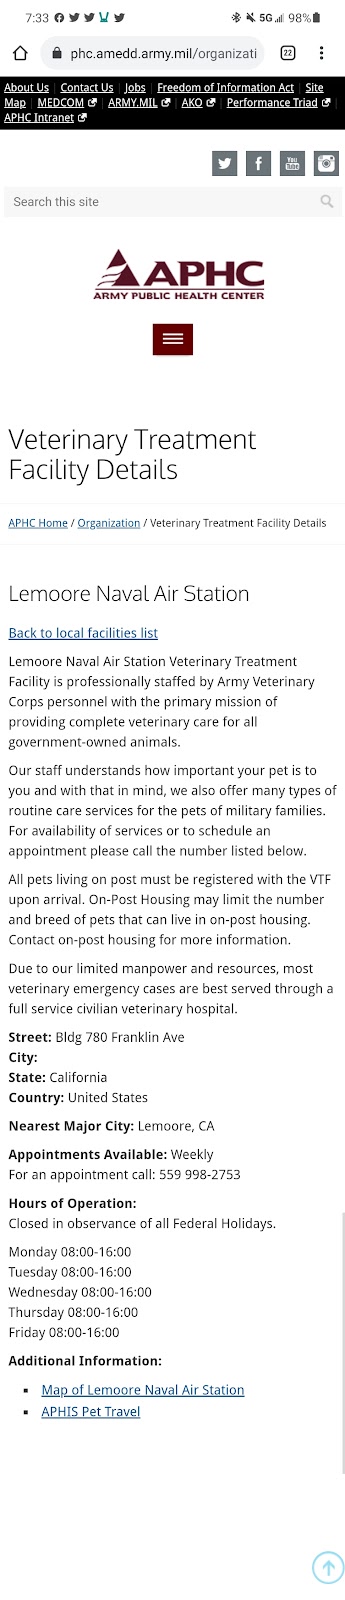 NAS Lemoore Veterinary Treatment Facility | Lemoore, CA 93245 | Phone: (559) 998-2757